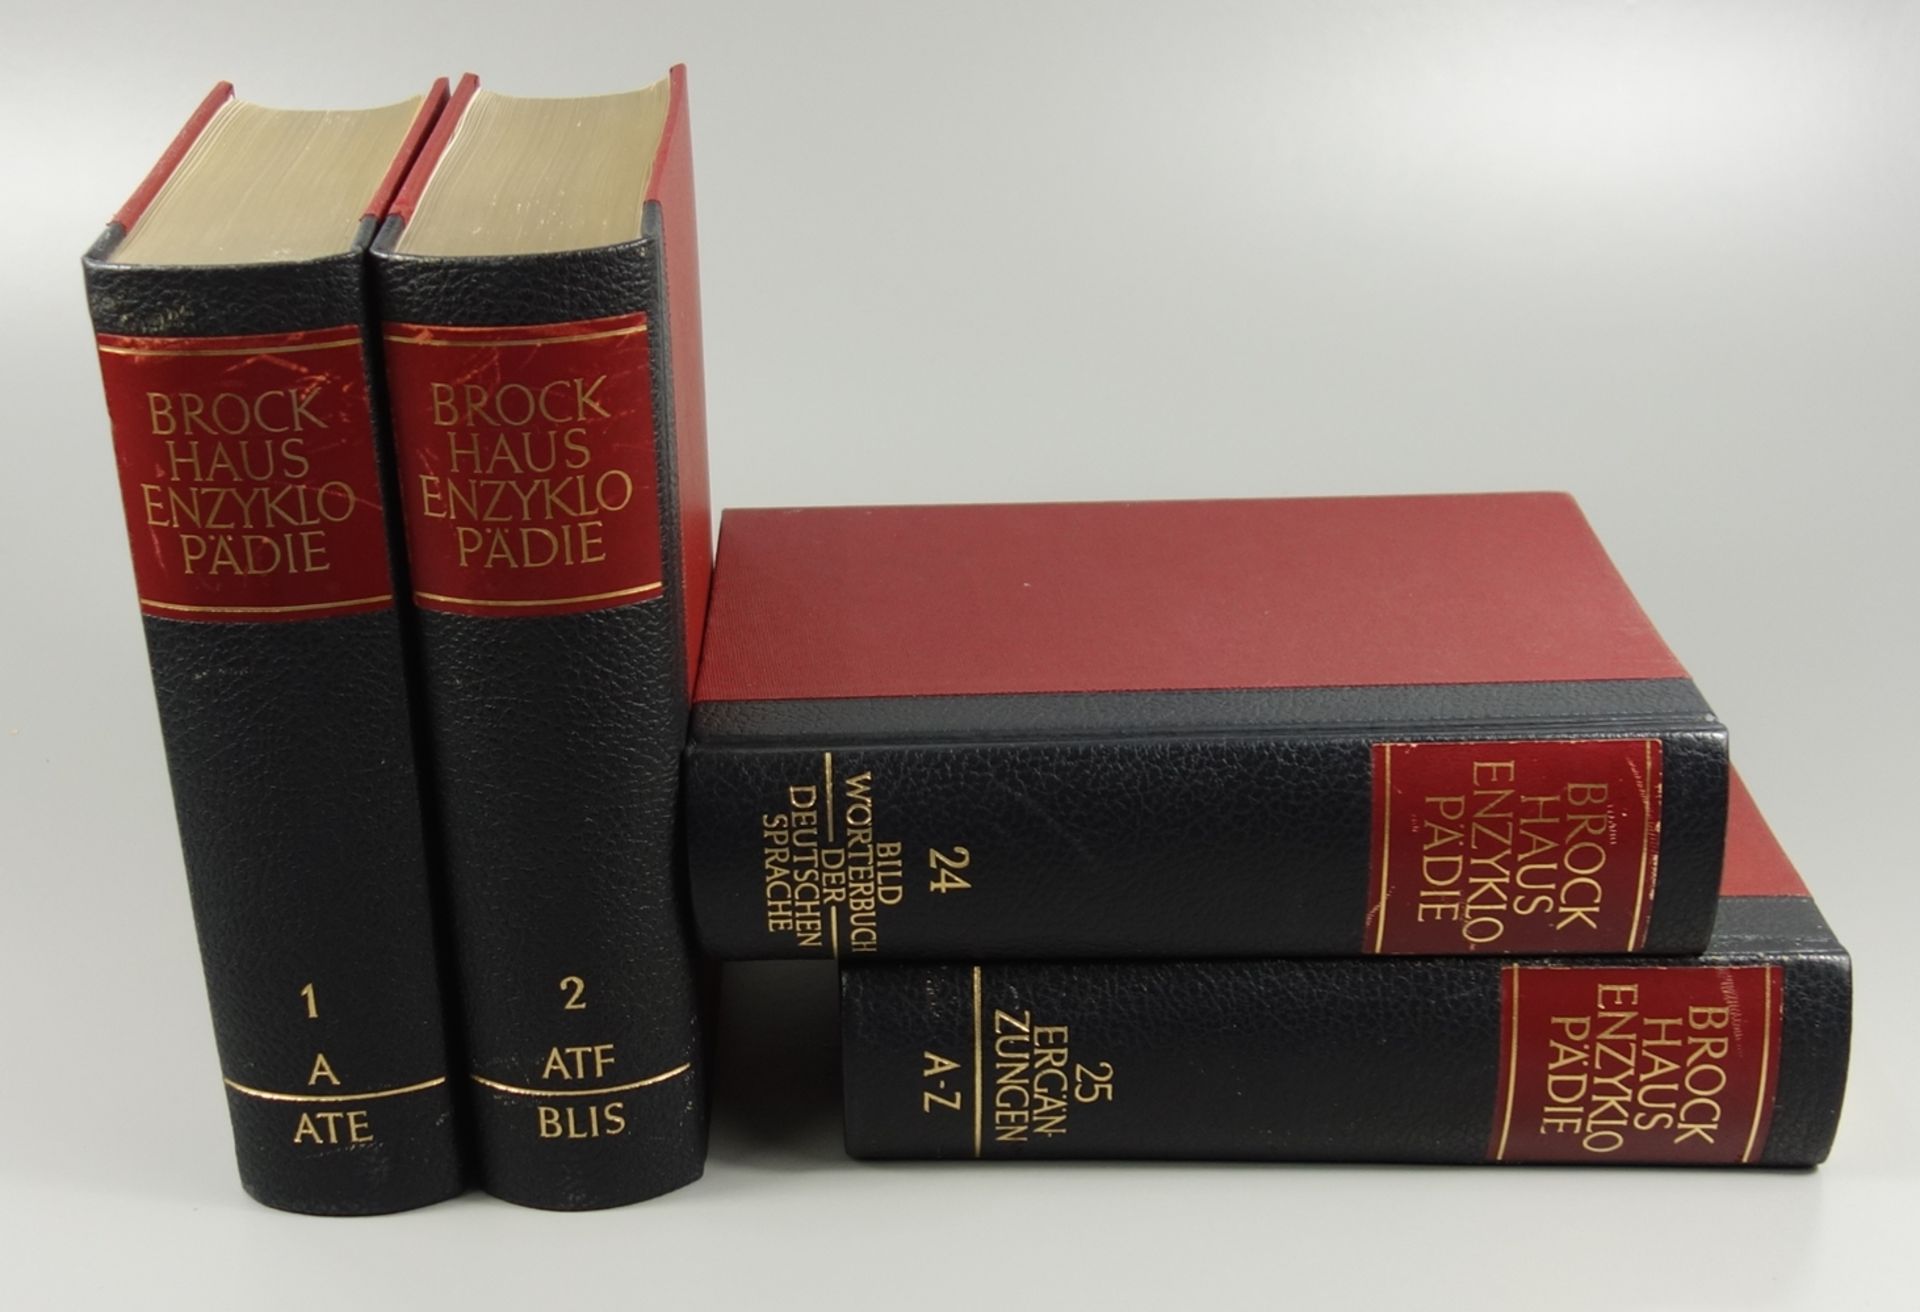 Brockhaus-Enzyklopädie in 20 Bänden, plus 5 Zusatzbände, 1966 bis 1981, 17.Auflage, Brockhaus